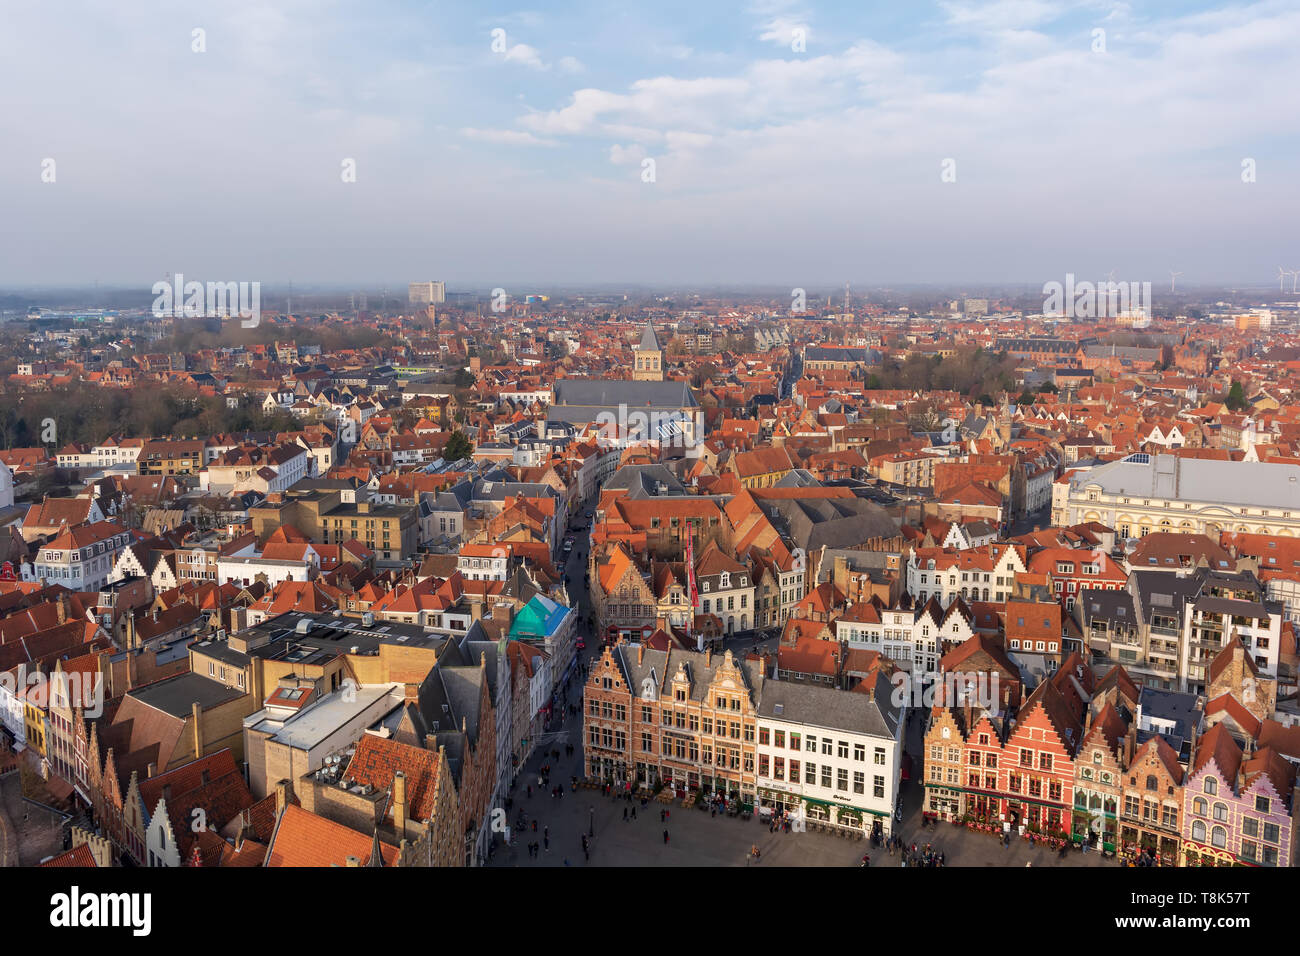 Ville fantastique avec des toits de tuiles rouges et une partie de la Place du Marché (Markt) en journée d'hiver ensoleillée. Vue de la ville médiévale de Bruges par le haut. Banque D'Images